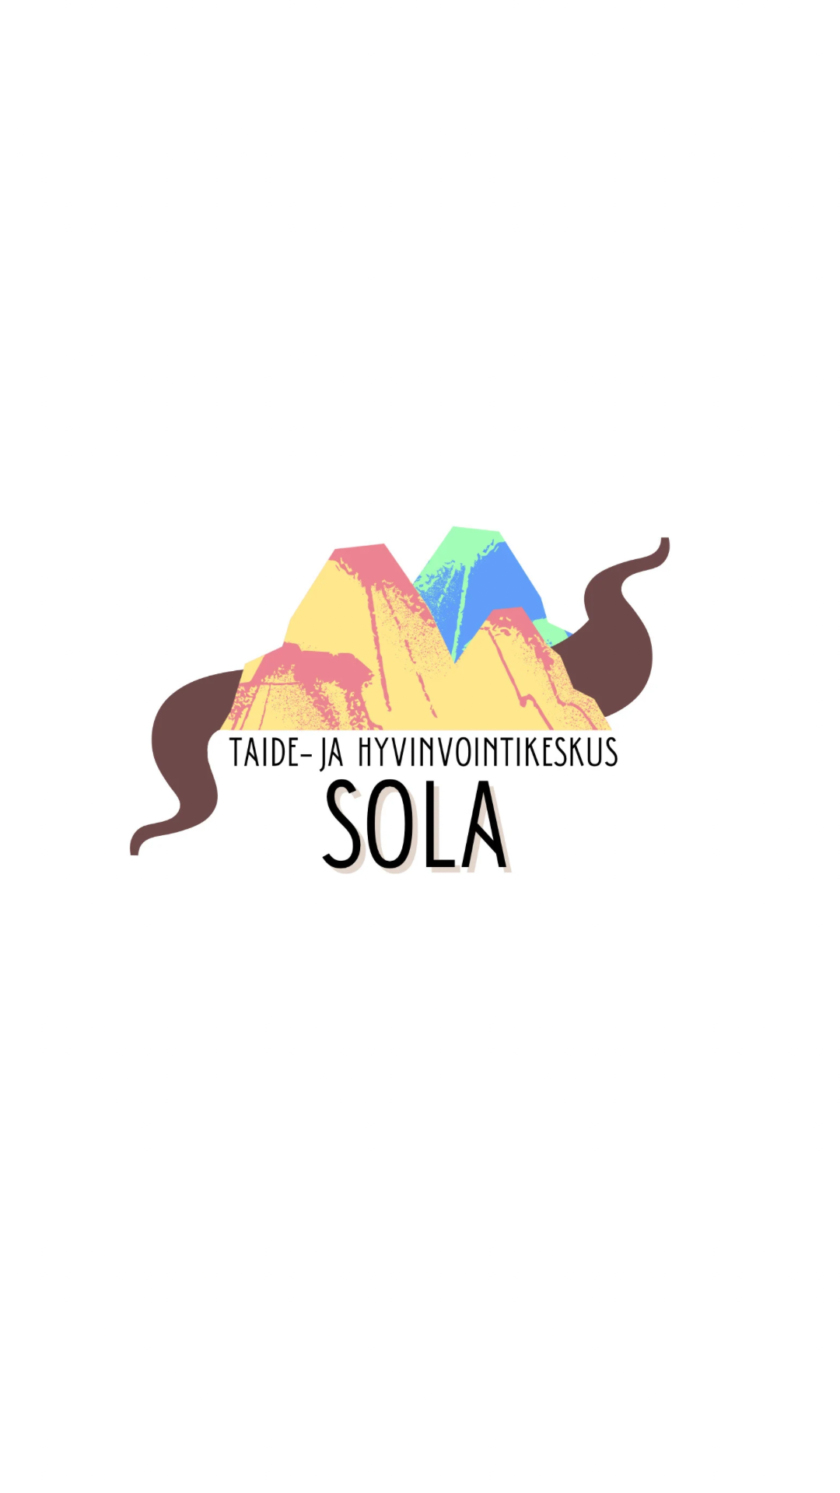 Taide- ja hyvinvointikeskus Solan logo, jossa on keltapunainen ja sinivihreä vuoristo, jonka välistä kulkee ruskea tie.